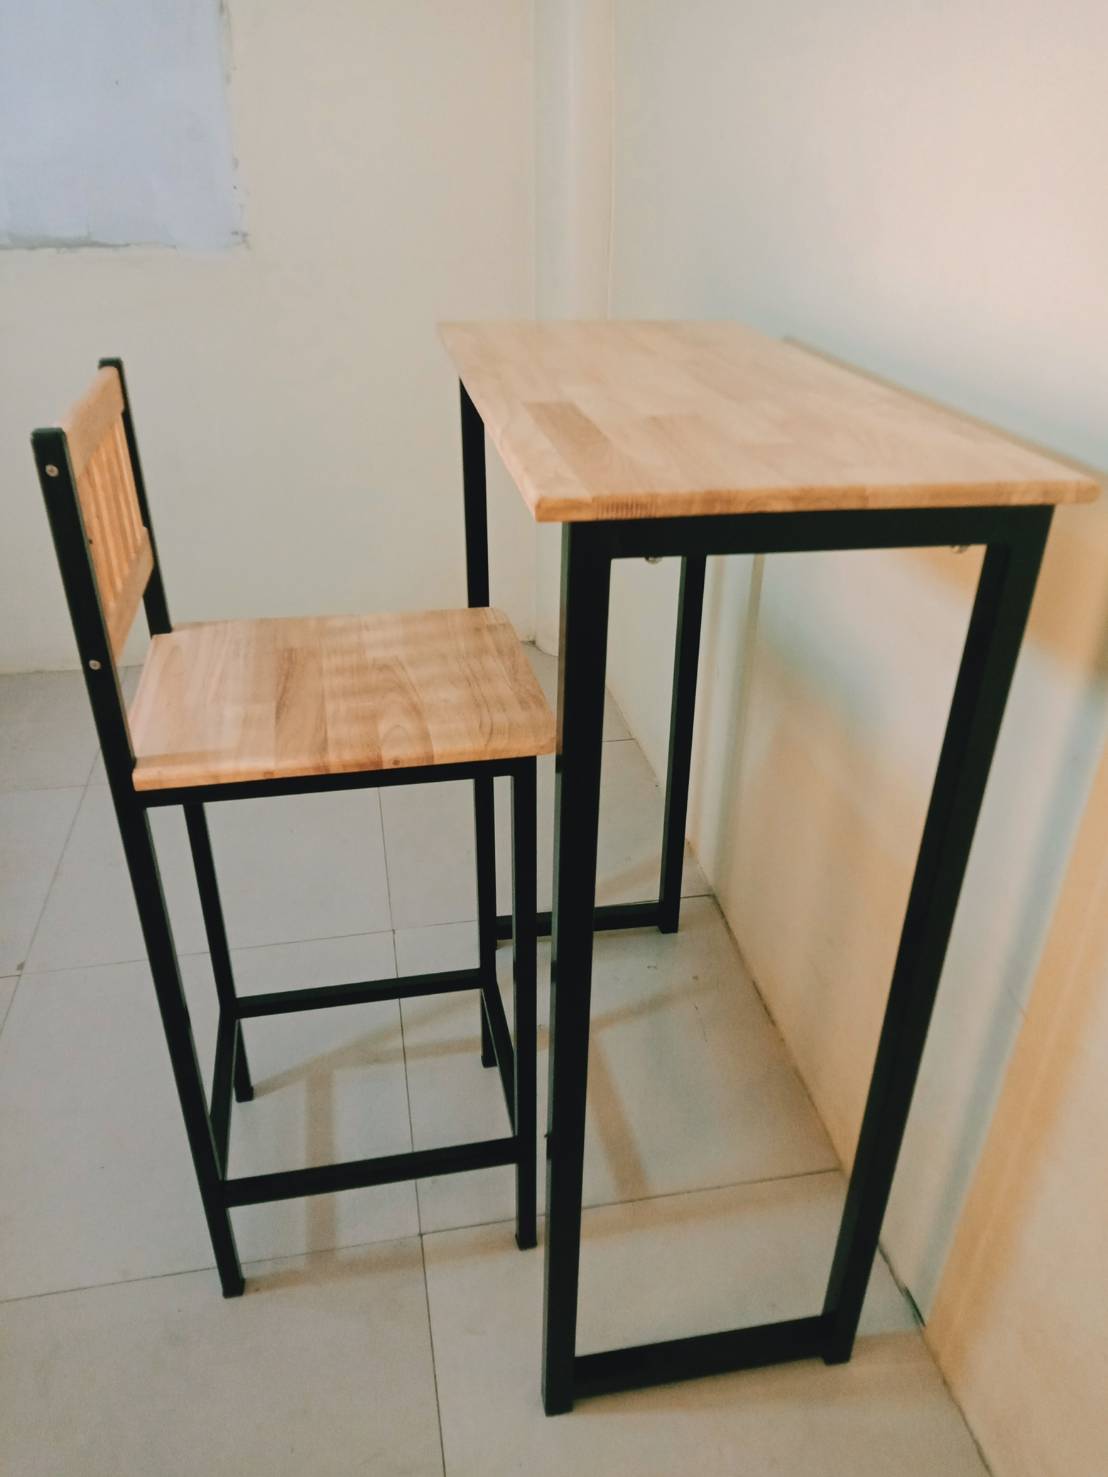 โต๊ะบาร์ไม้ยางพาราสไตค์ลอฟฟ์ชุดประกอบ คอนโดเซ็ต ทนน้ำ ทนแดด +++ส่งฟรี+++ โต๊ะ 1 เก้าอี้ 1 แข็งแรง